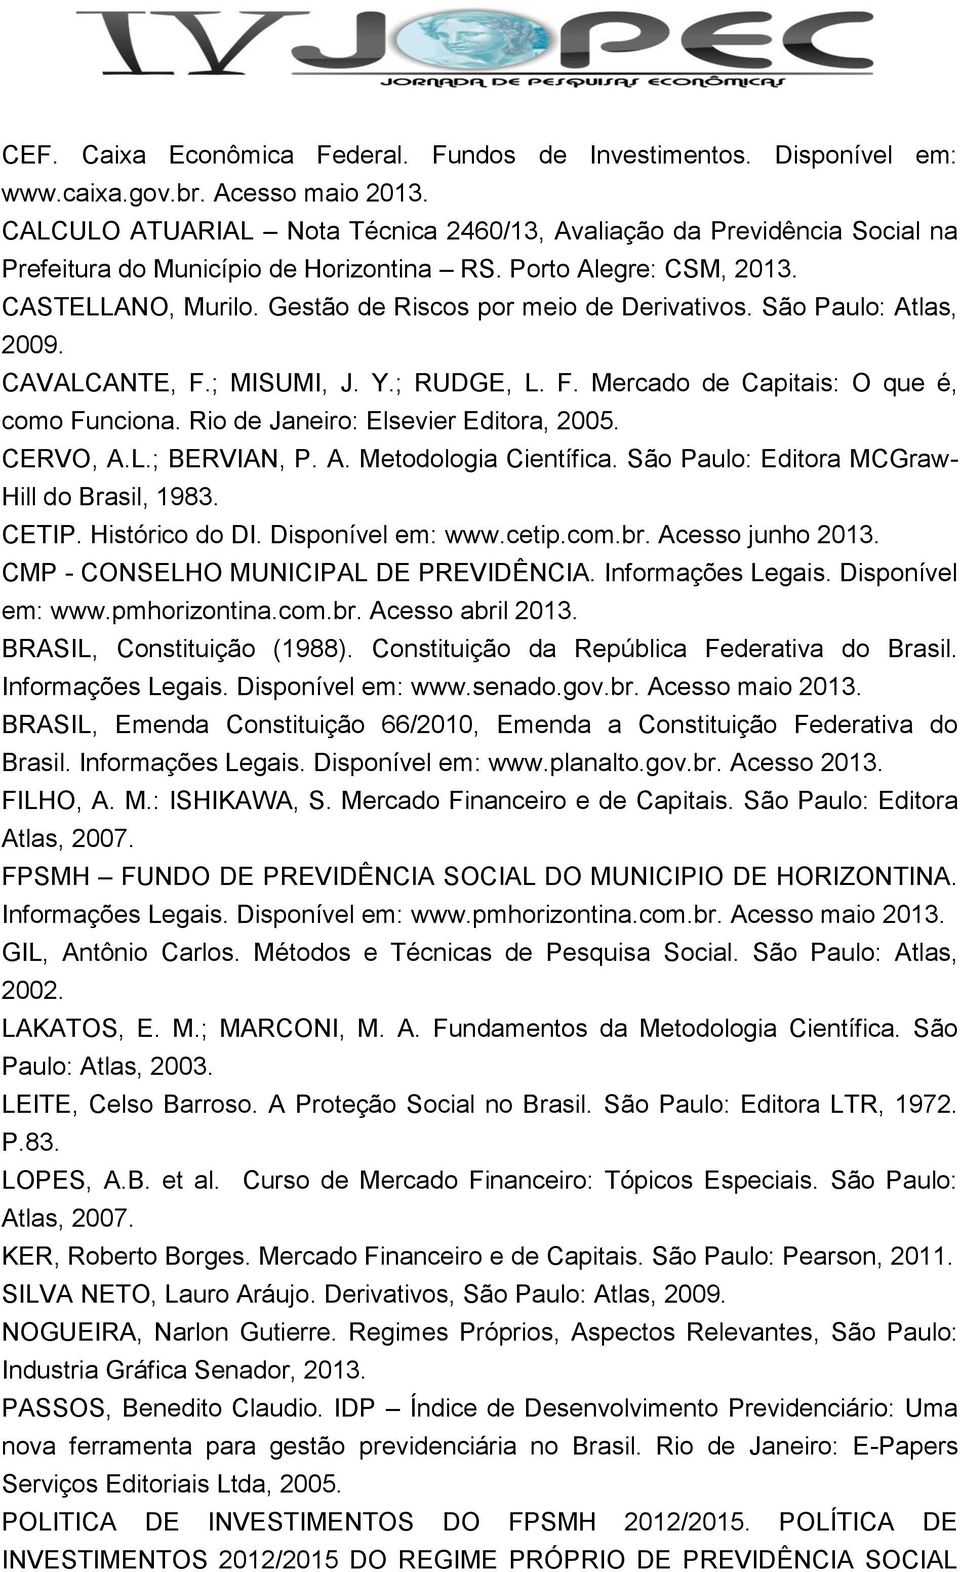 Gestão de Riscos por meio de Derivativos. São Paulo: Atlas, 2009. CAVALCANTE, F.; MISUMI, J. Y.; RUDGE, L. F. Mercado de Capitais: O que é, como Funciona. Rio de Janeiro: Elsevier Editora, 2005.